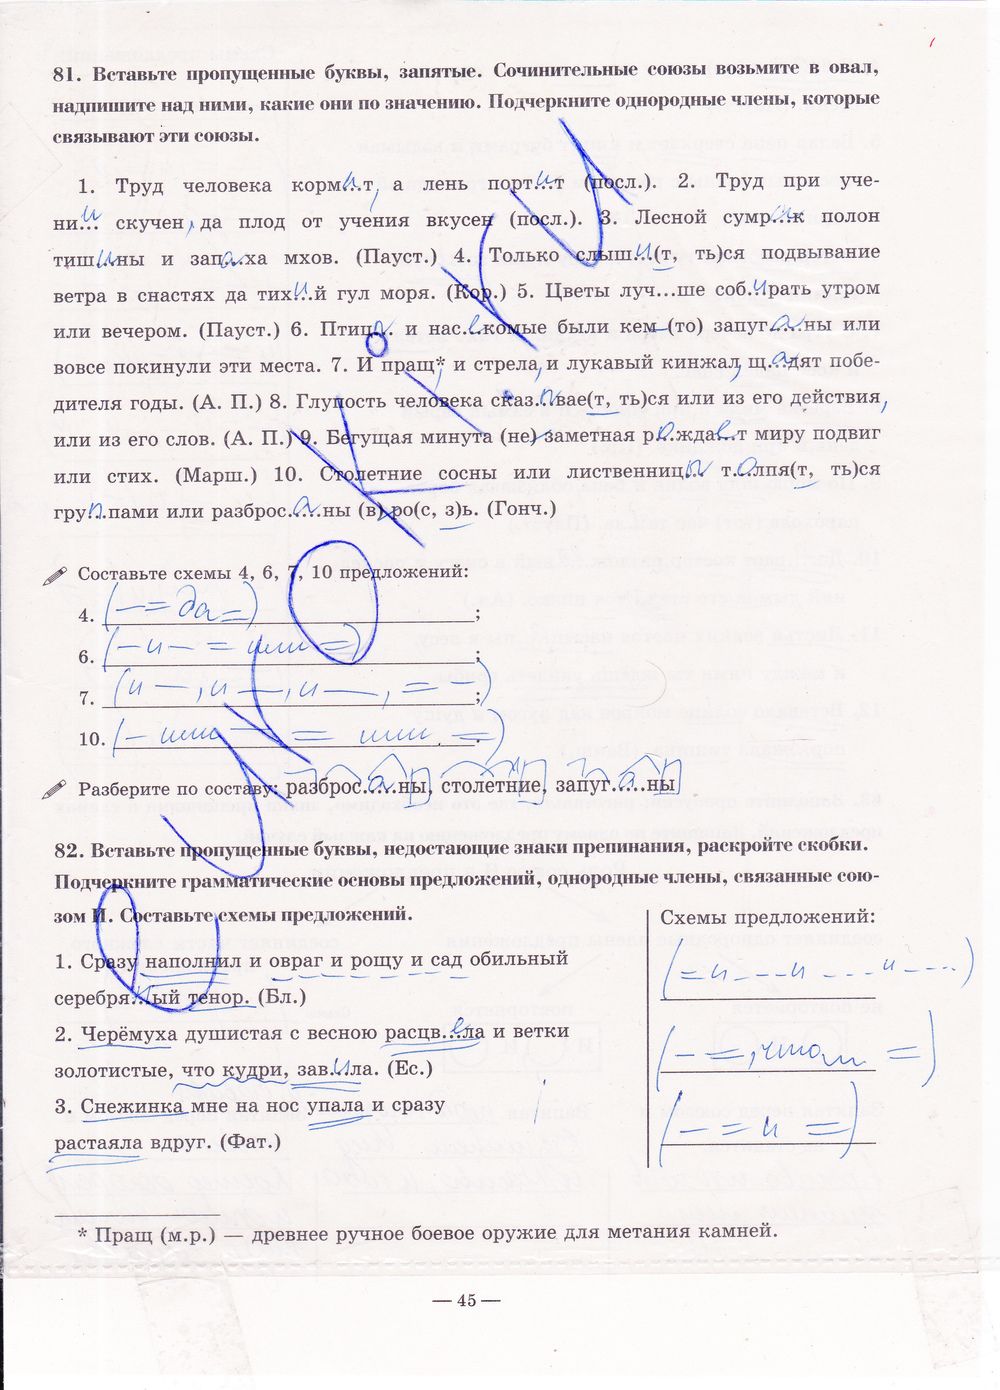 ГДЗ Русский язык 7 класс - стр. 45